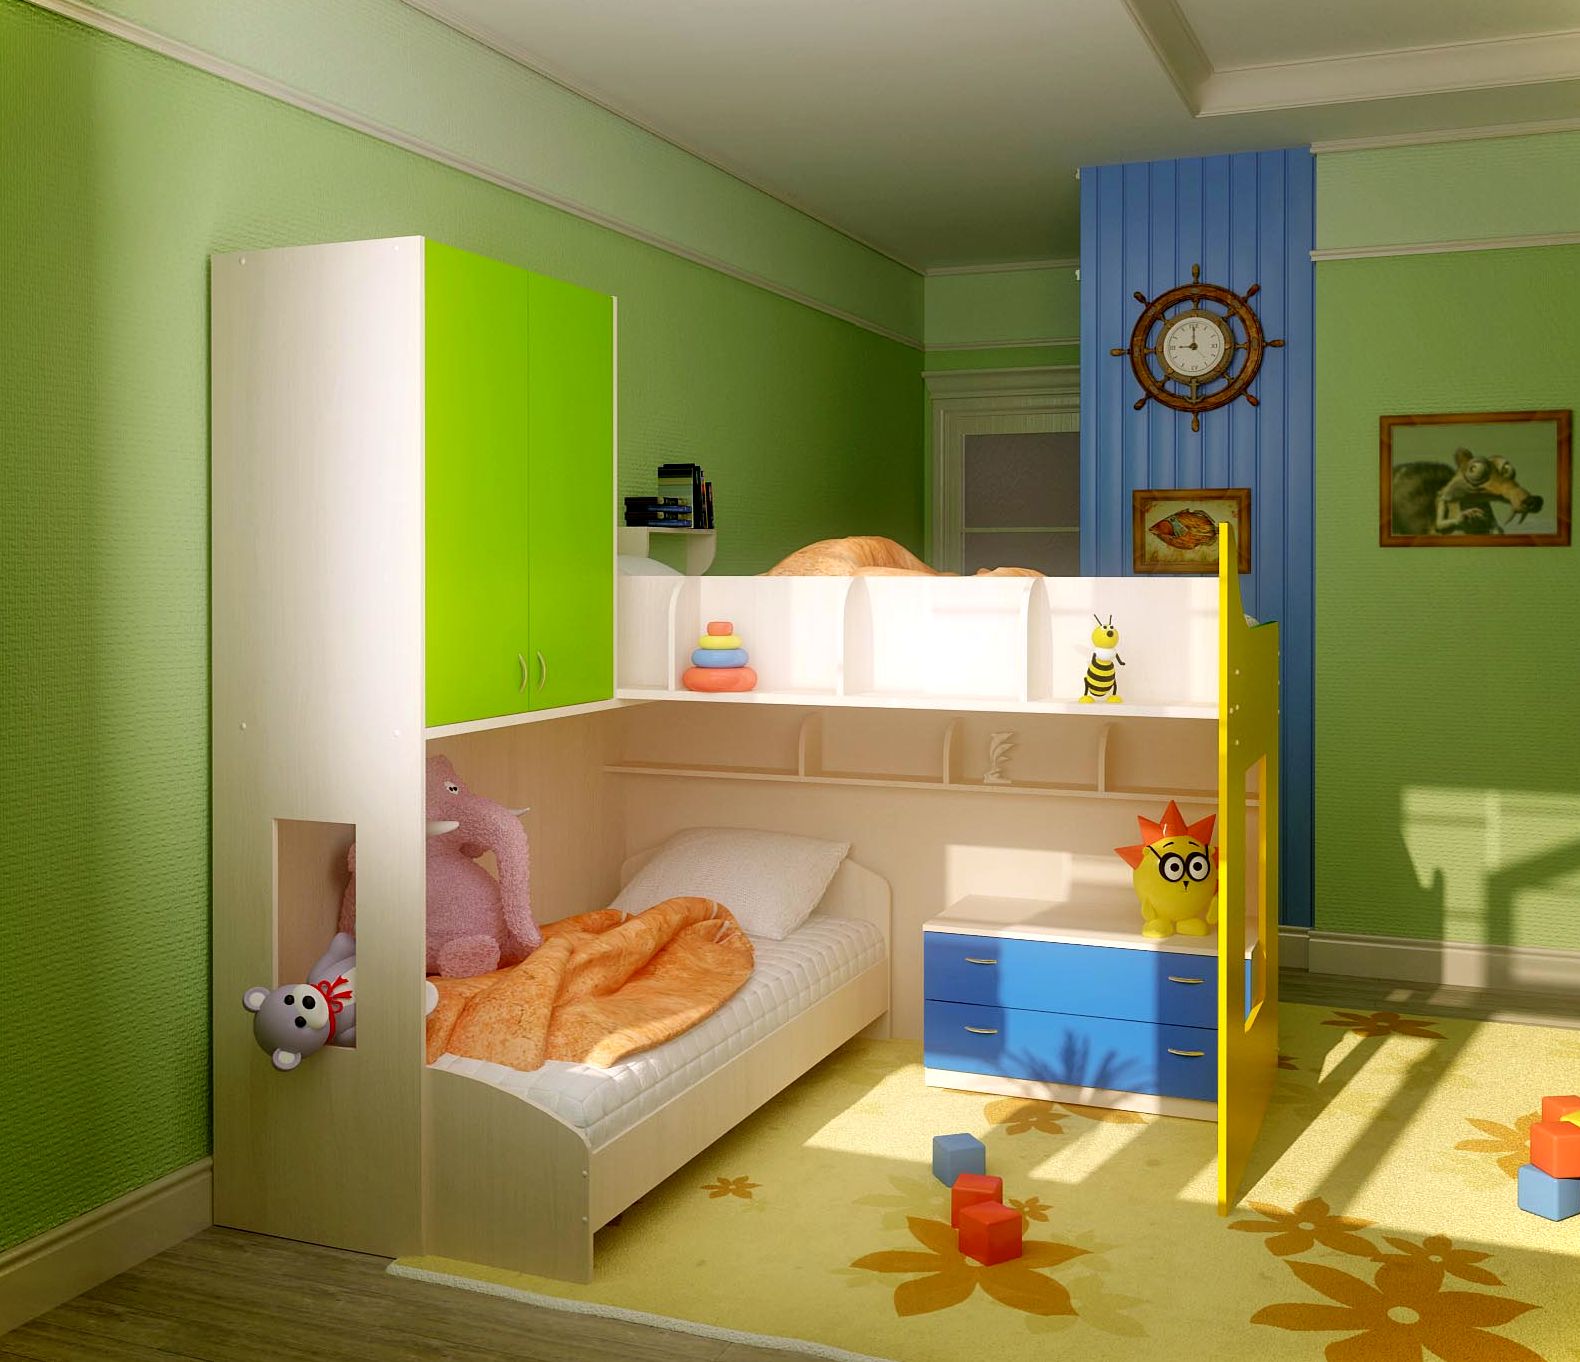 Дизайн комнаты для двоих подростков » Современный дизайн на Vip-1gl